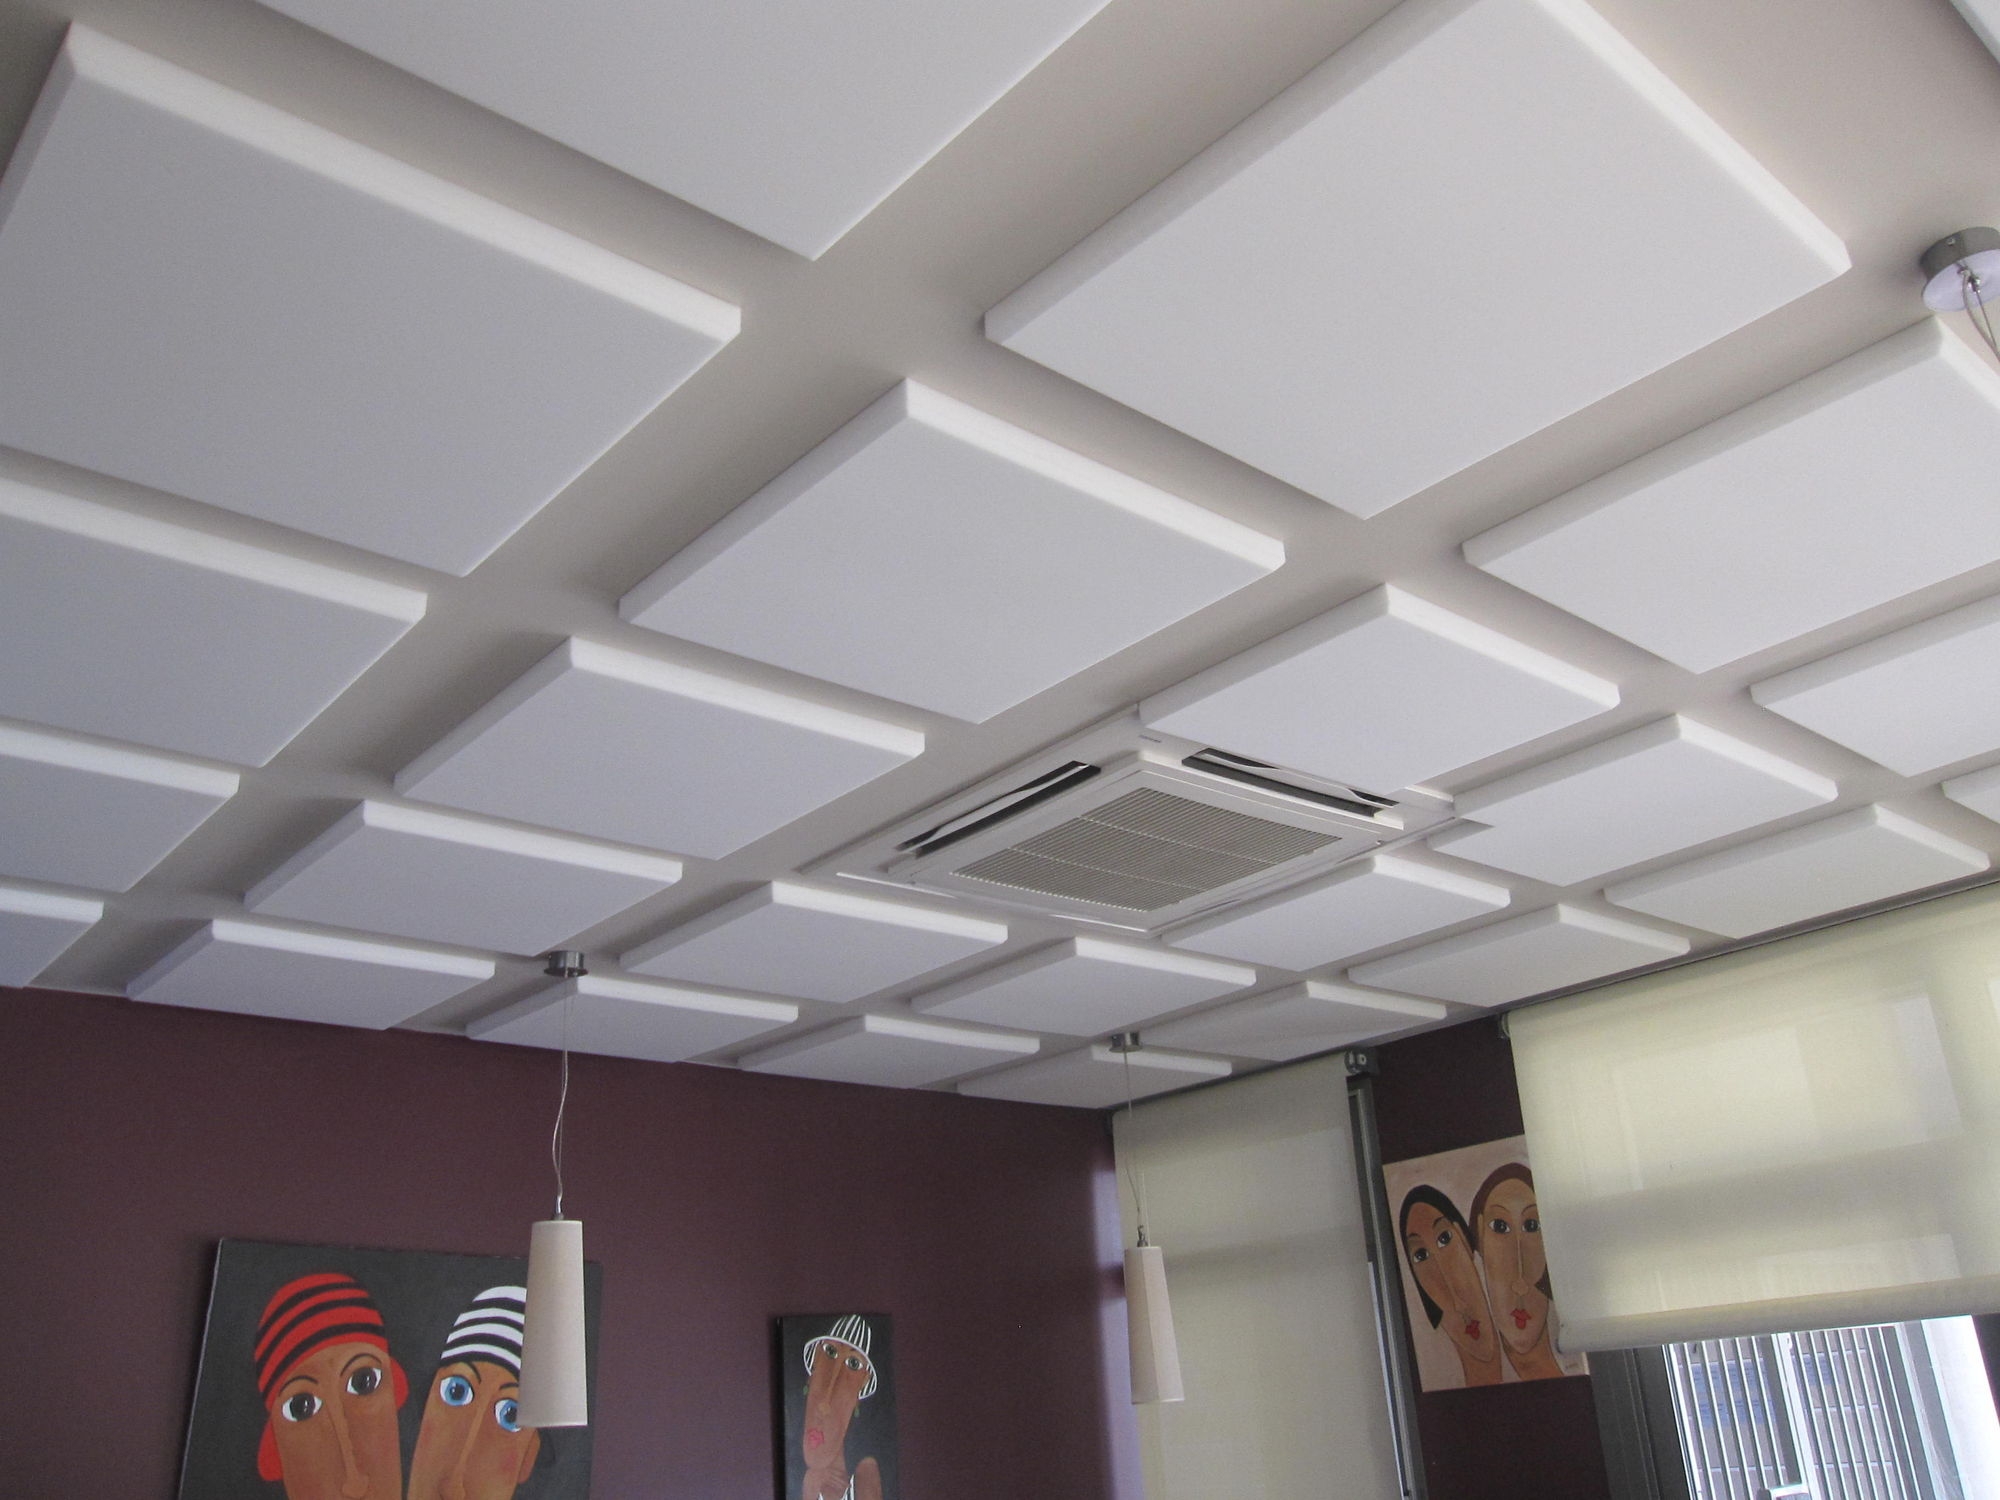 Acoustic Suspended Ceiling Tiles Acoustic Suspended Ceiling Tiles foam suspended ceiling tile panel acoustic capteur 2000 X 1500